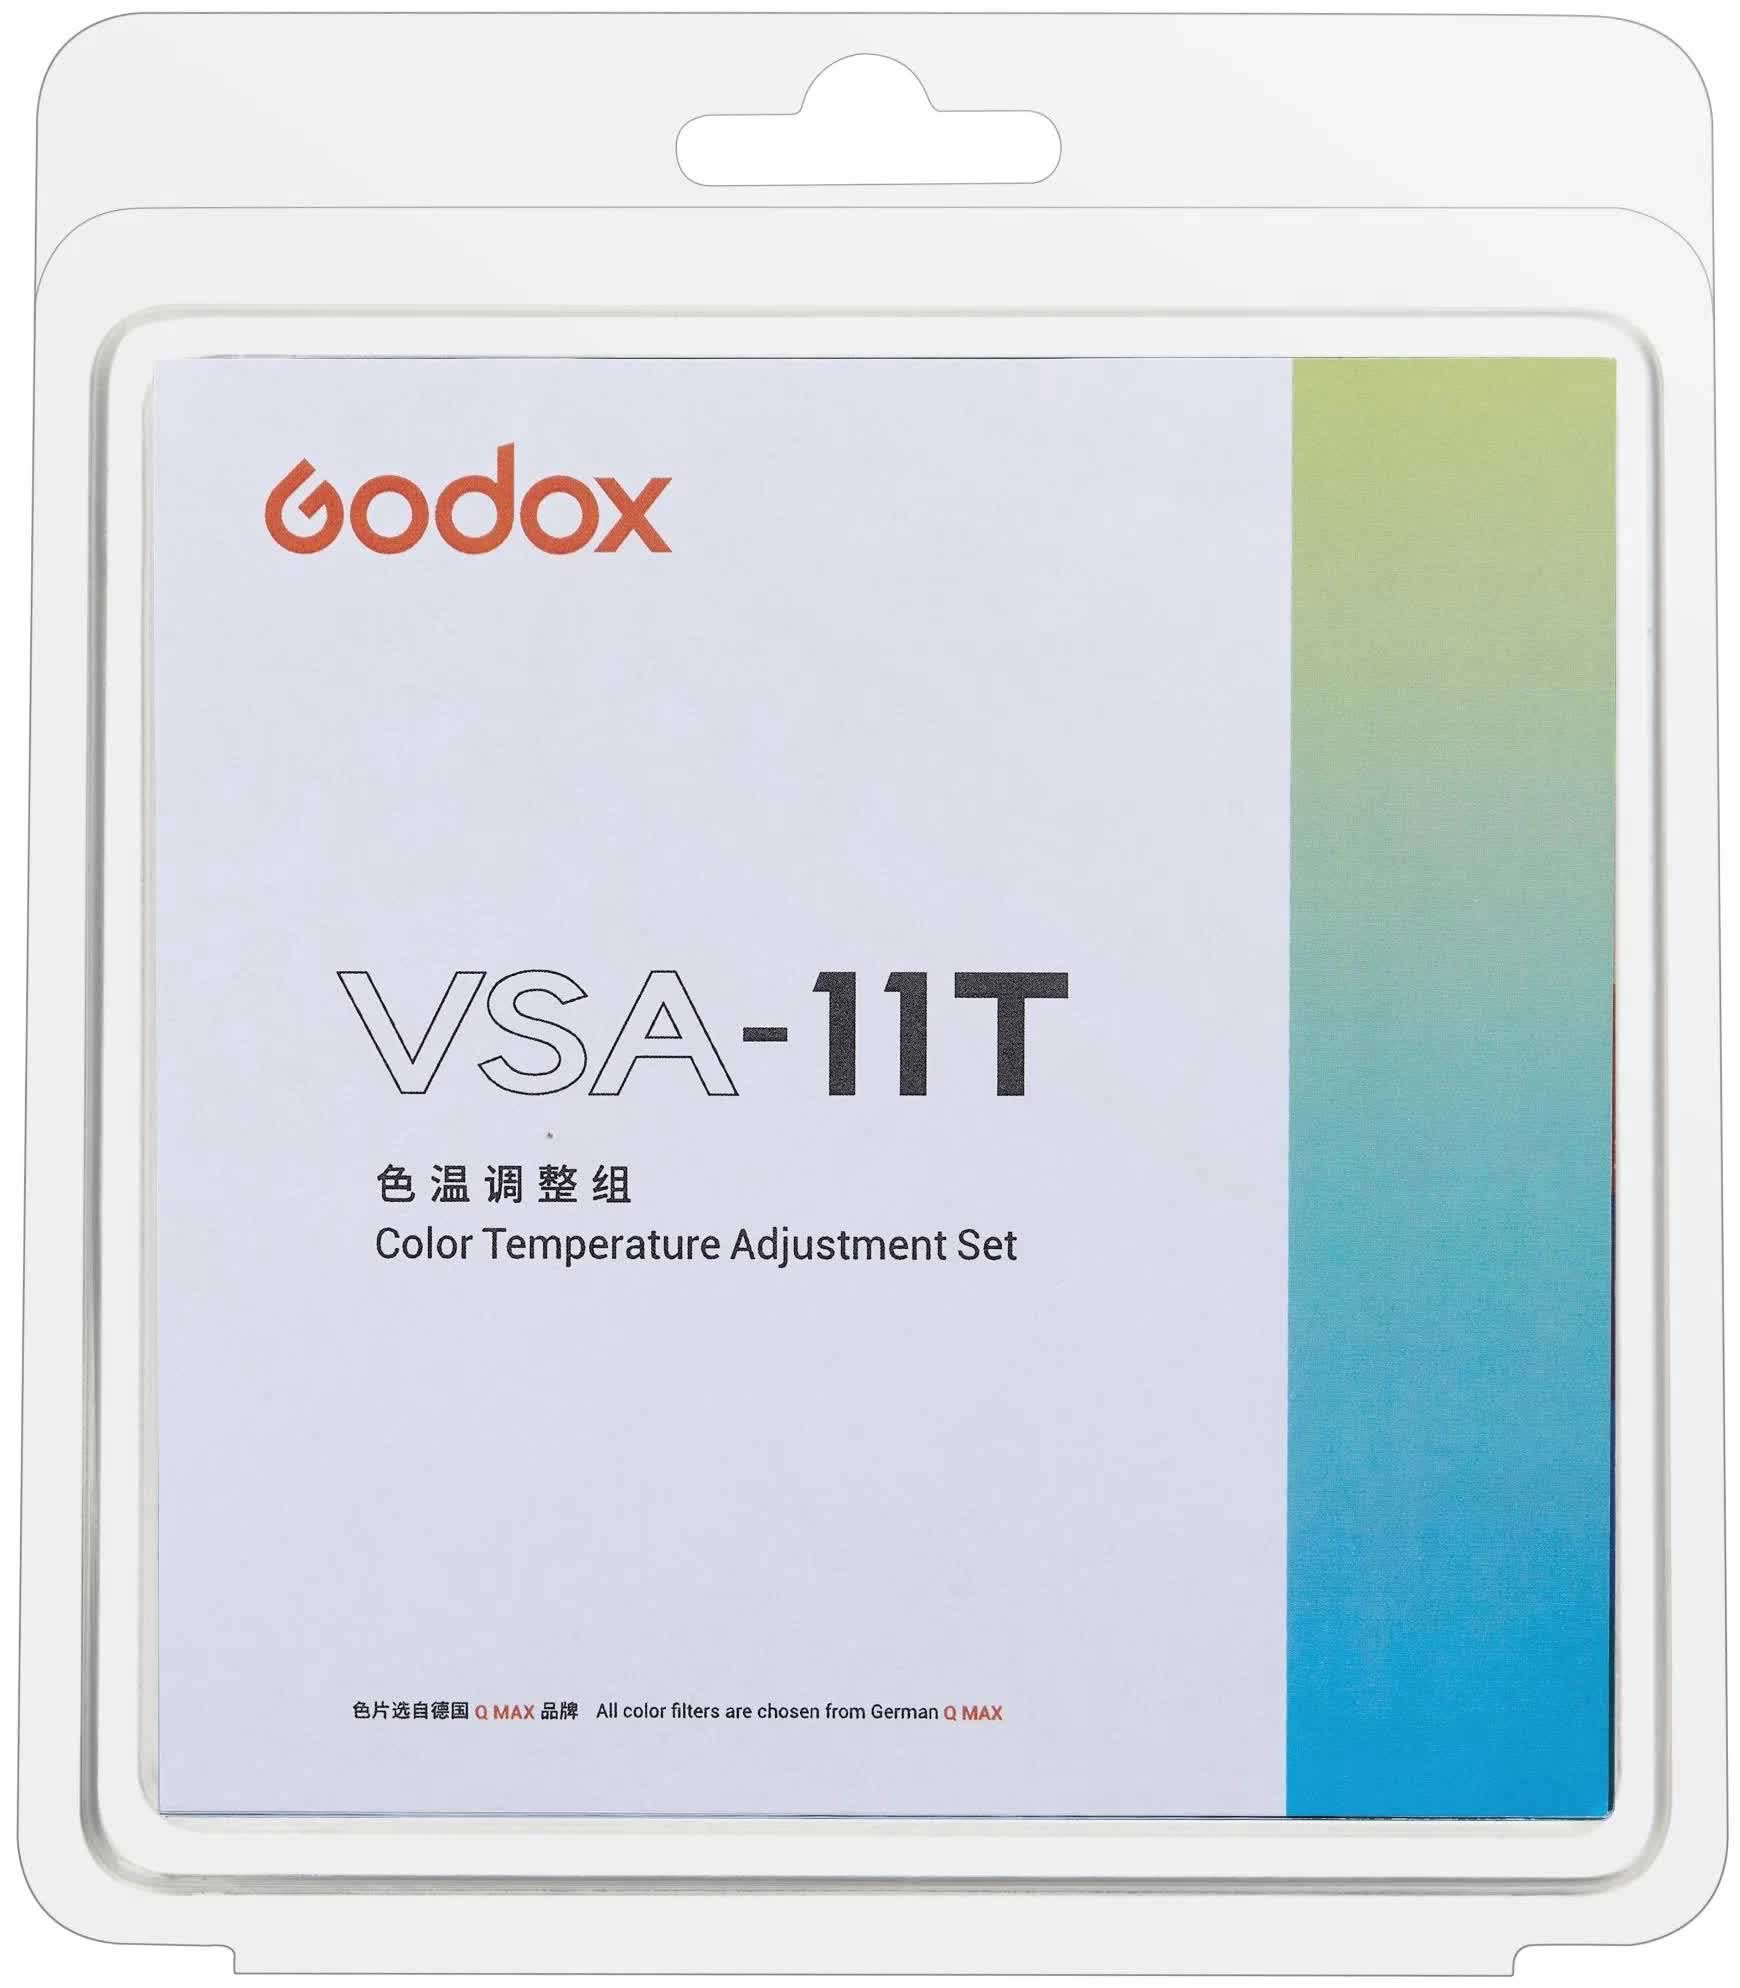 проекционная насадка godox vsa 26k с линзой 26 для студийных осветителей с байонетом bowens Набор цветокоррекционных фильтров Godox VSA-11T